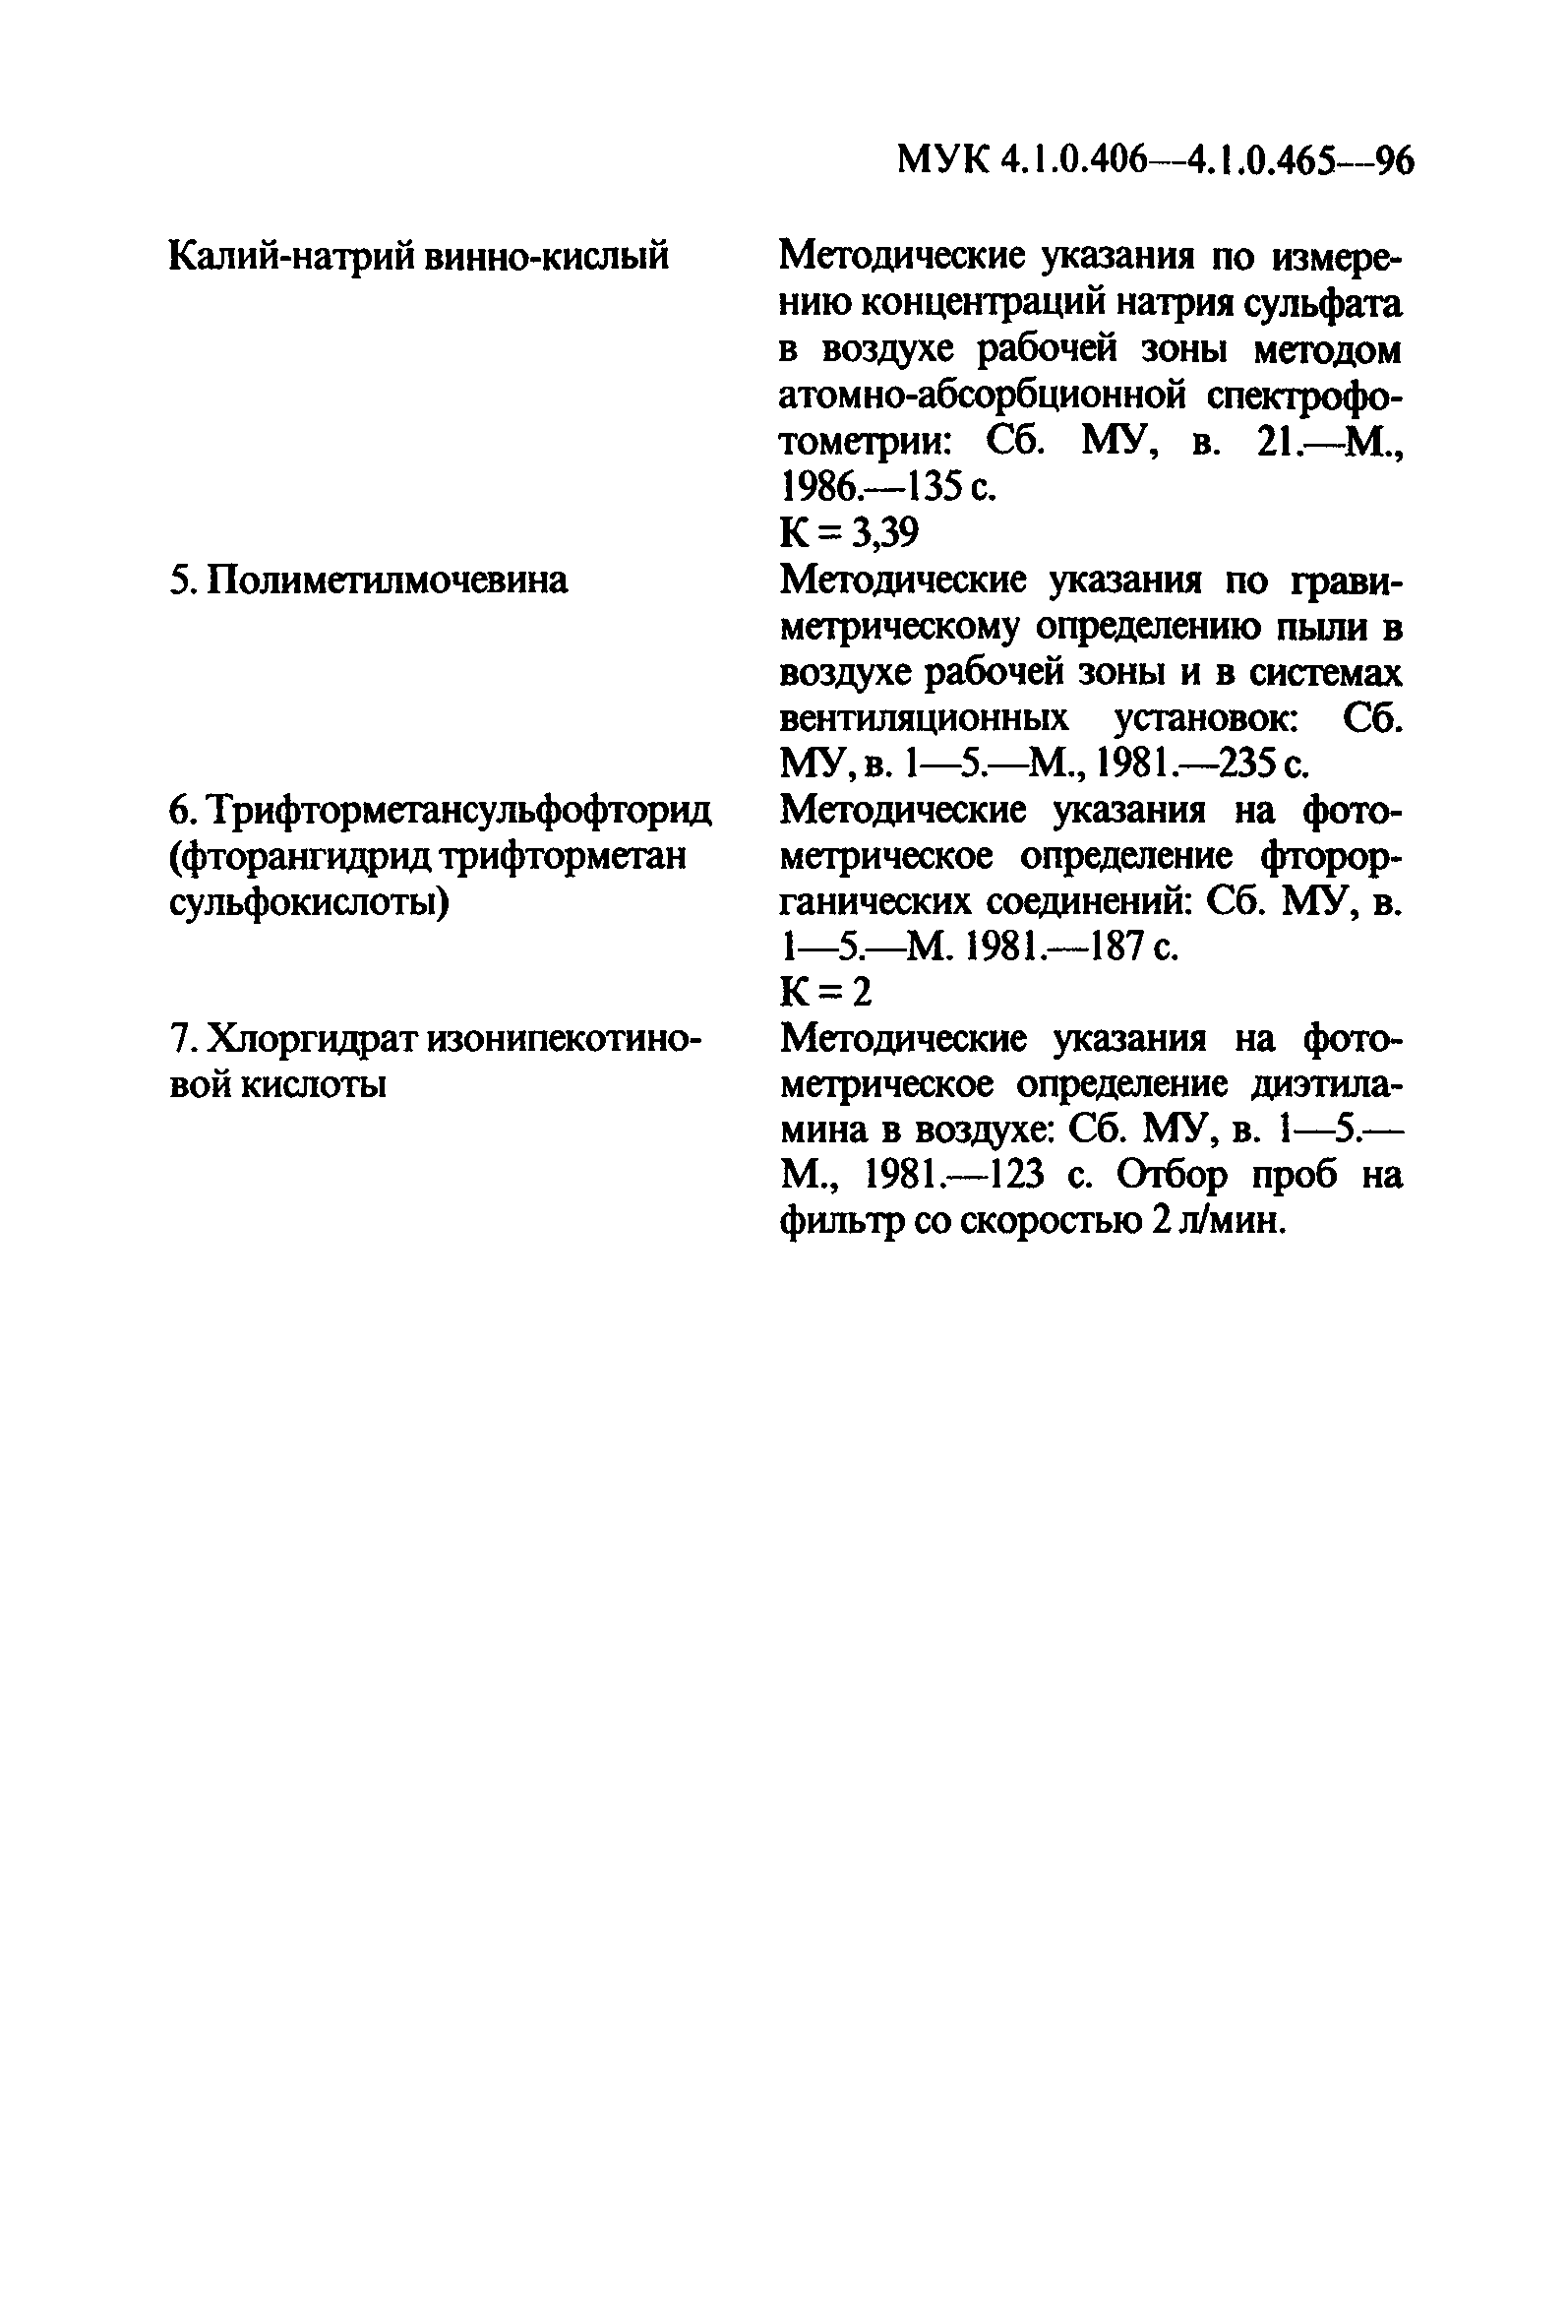 МУК 4.1.0.429-96